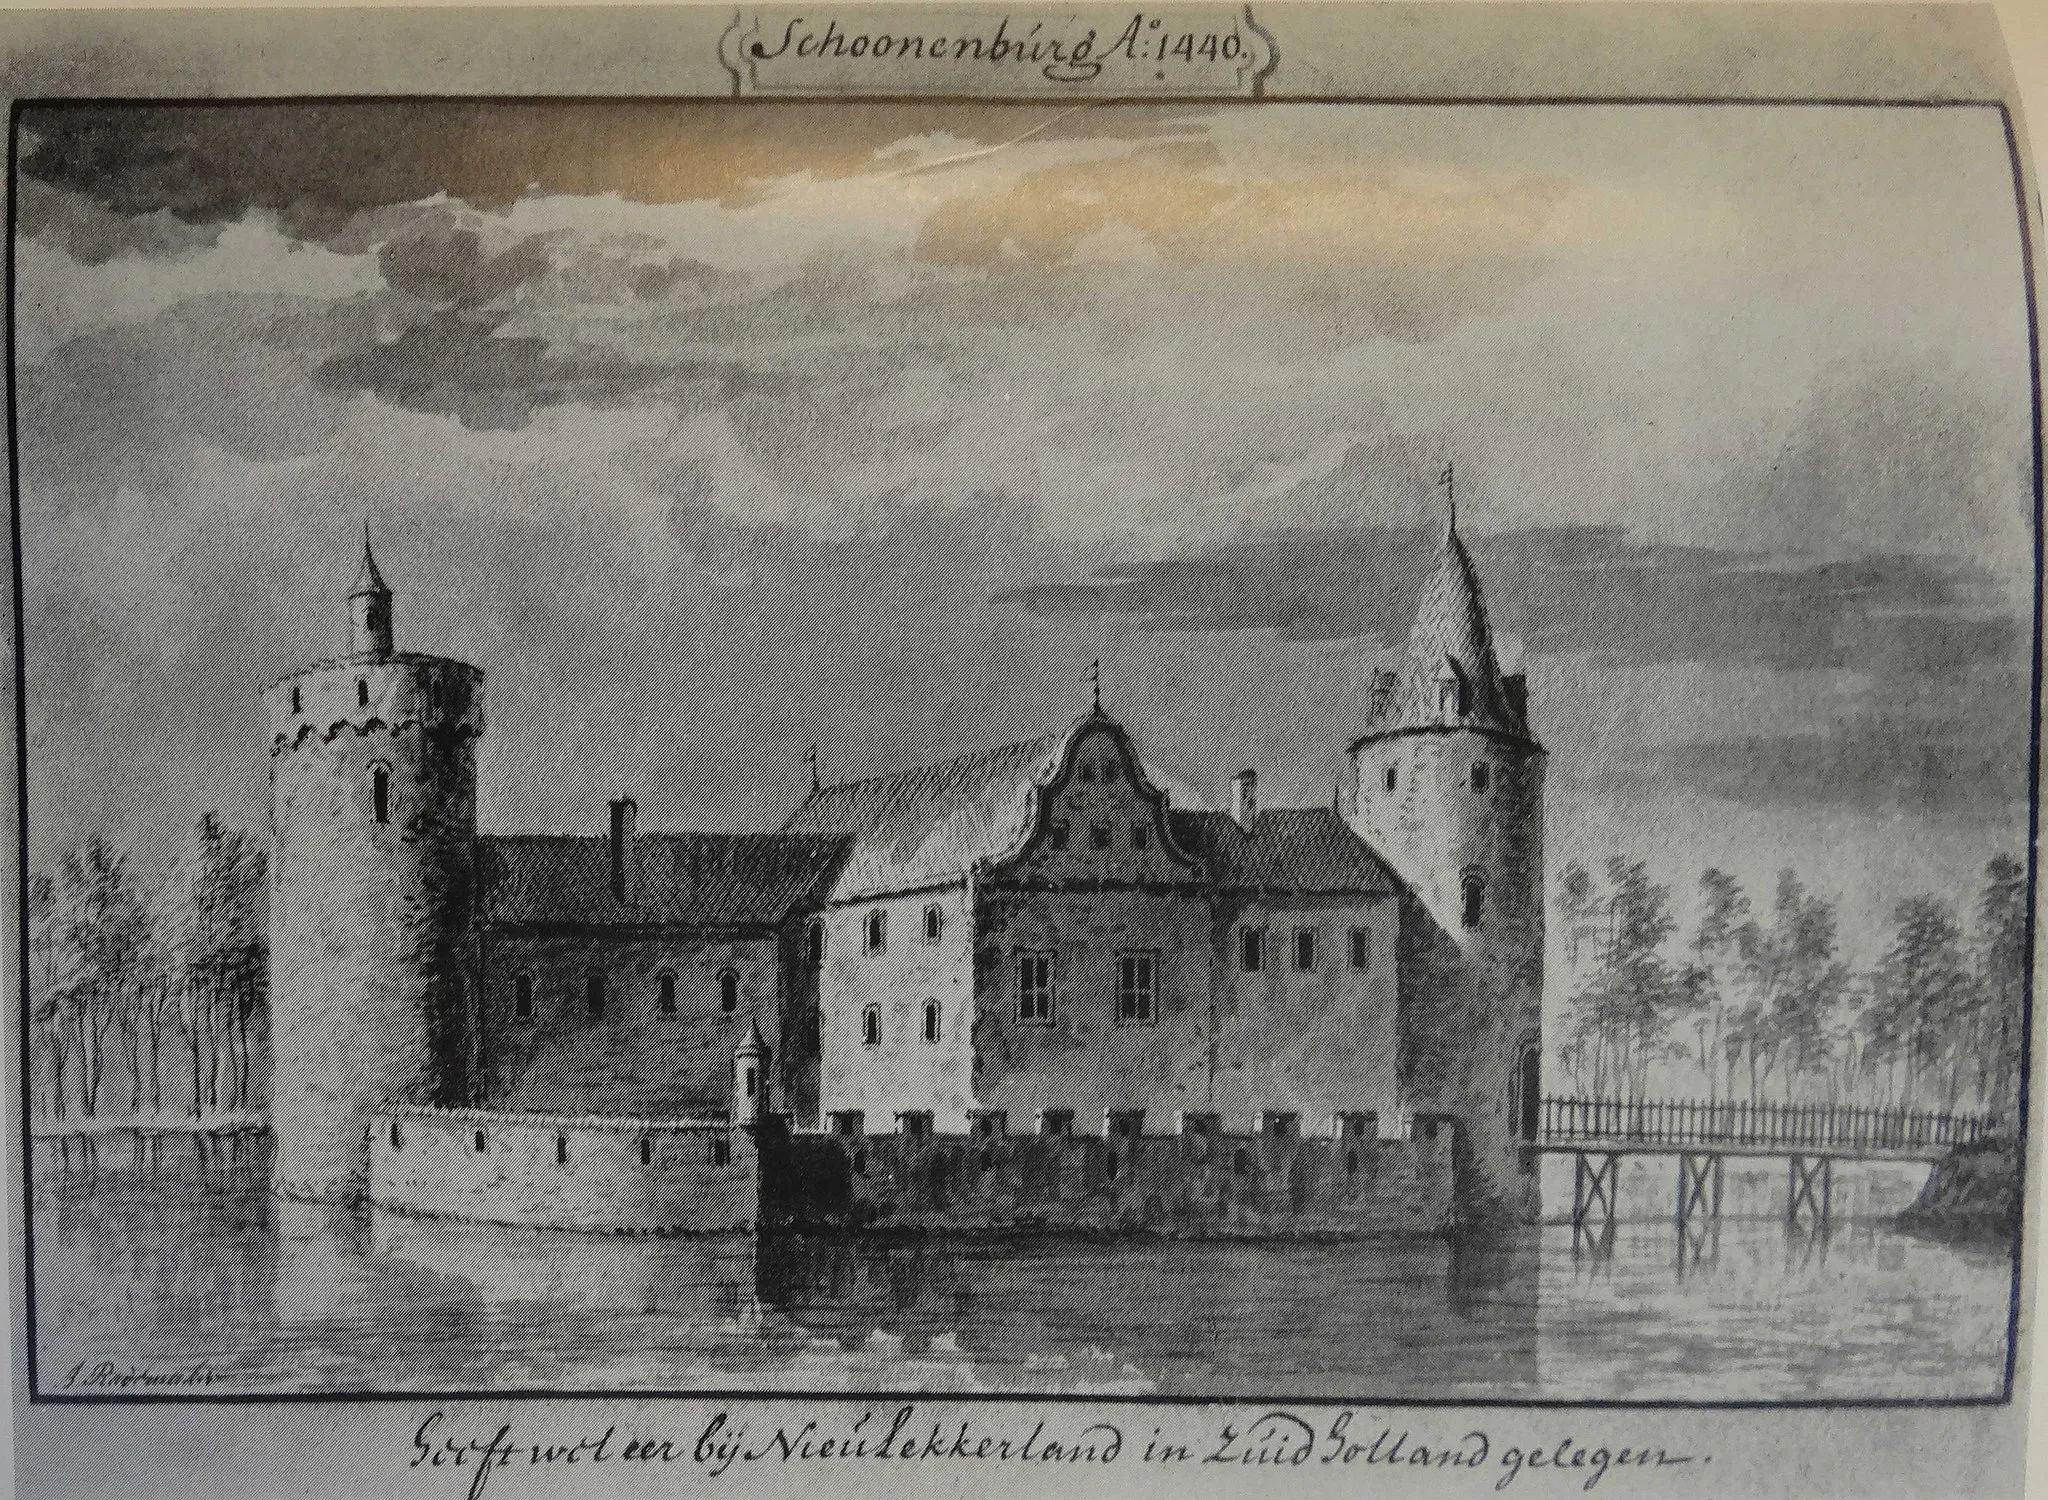 Photo showing: 18e eeuwse prent van het omstreeks 1450 verwoeste kasteel Schoonenburg gelegen op de Schoonenburger heuvel op de grens van Nieuw-Lekkerland en Streefkerk, of de afbeelding historisch correct is wordt betwijfeld